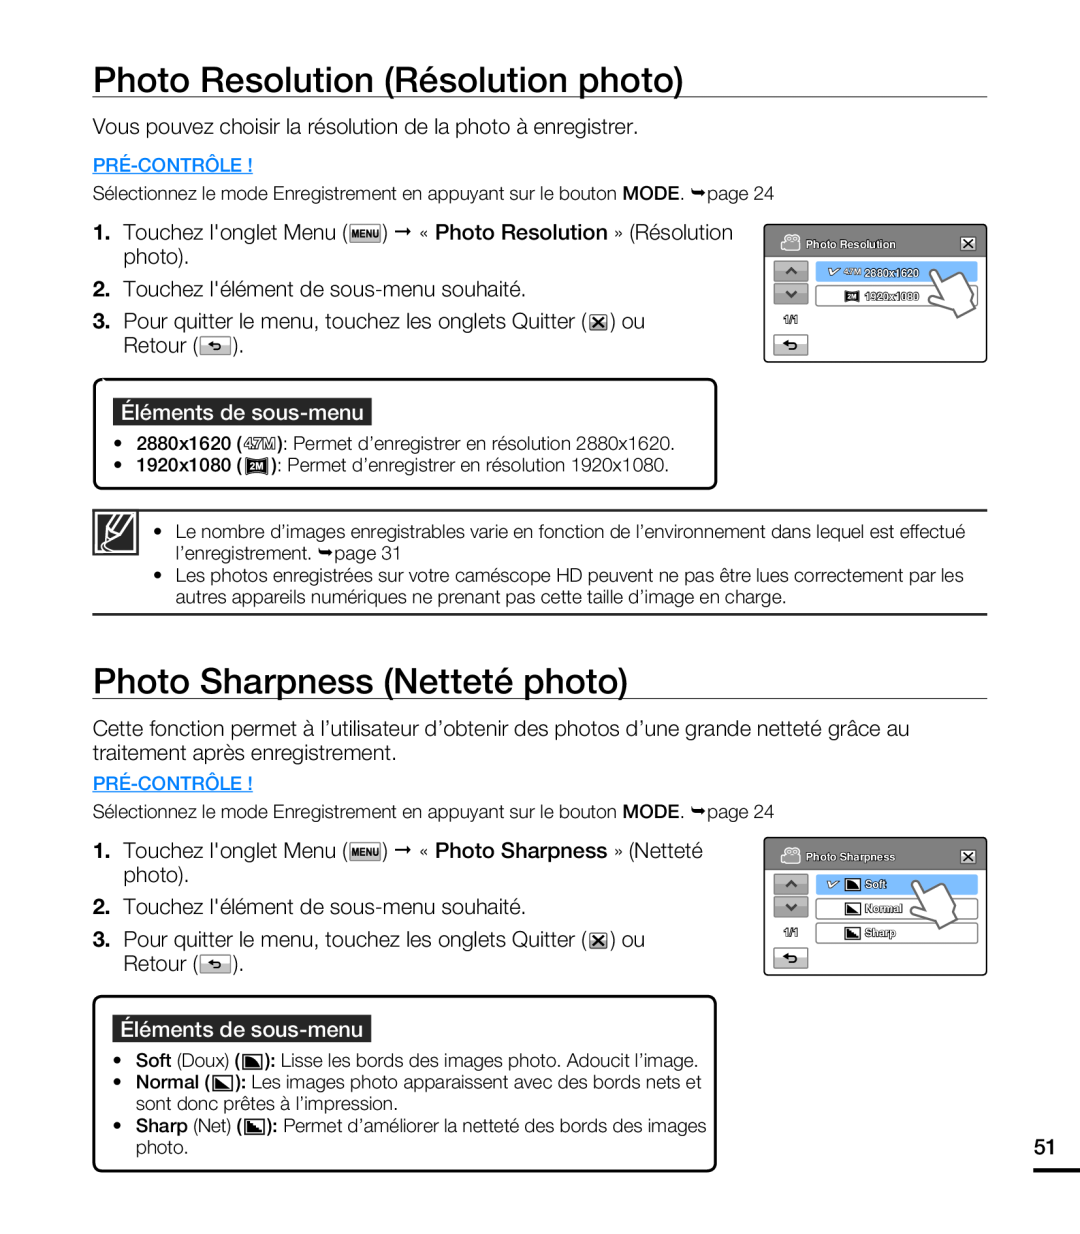 Samsung HMX-T10OP/EDC manual Photo Resolution Résolution photo, Photo Sharpness Netteté photo, Éléments de sous-menu 